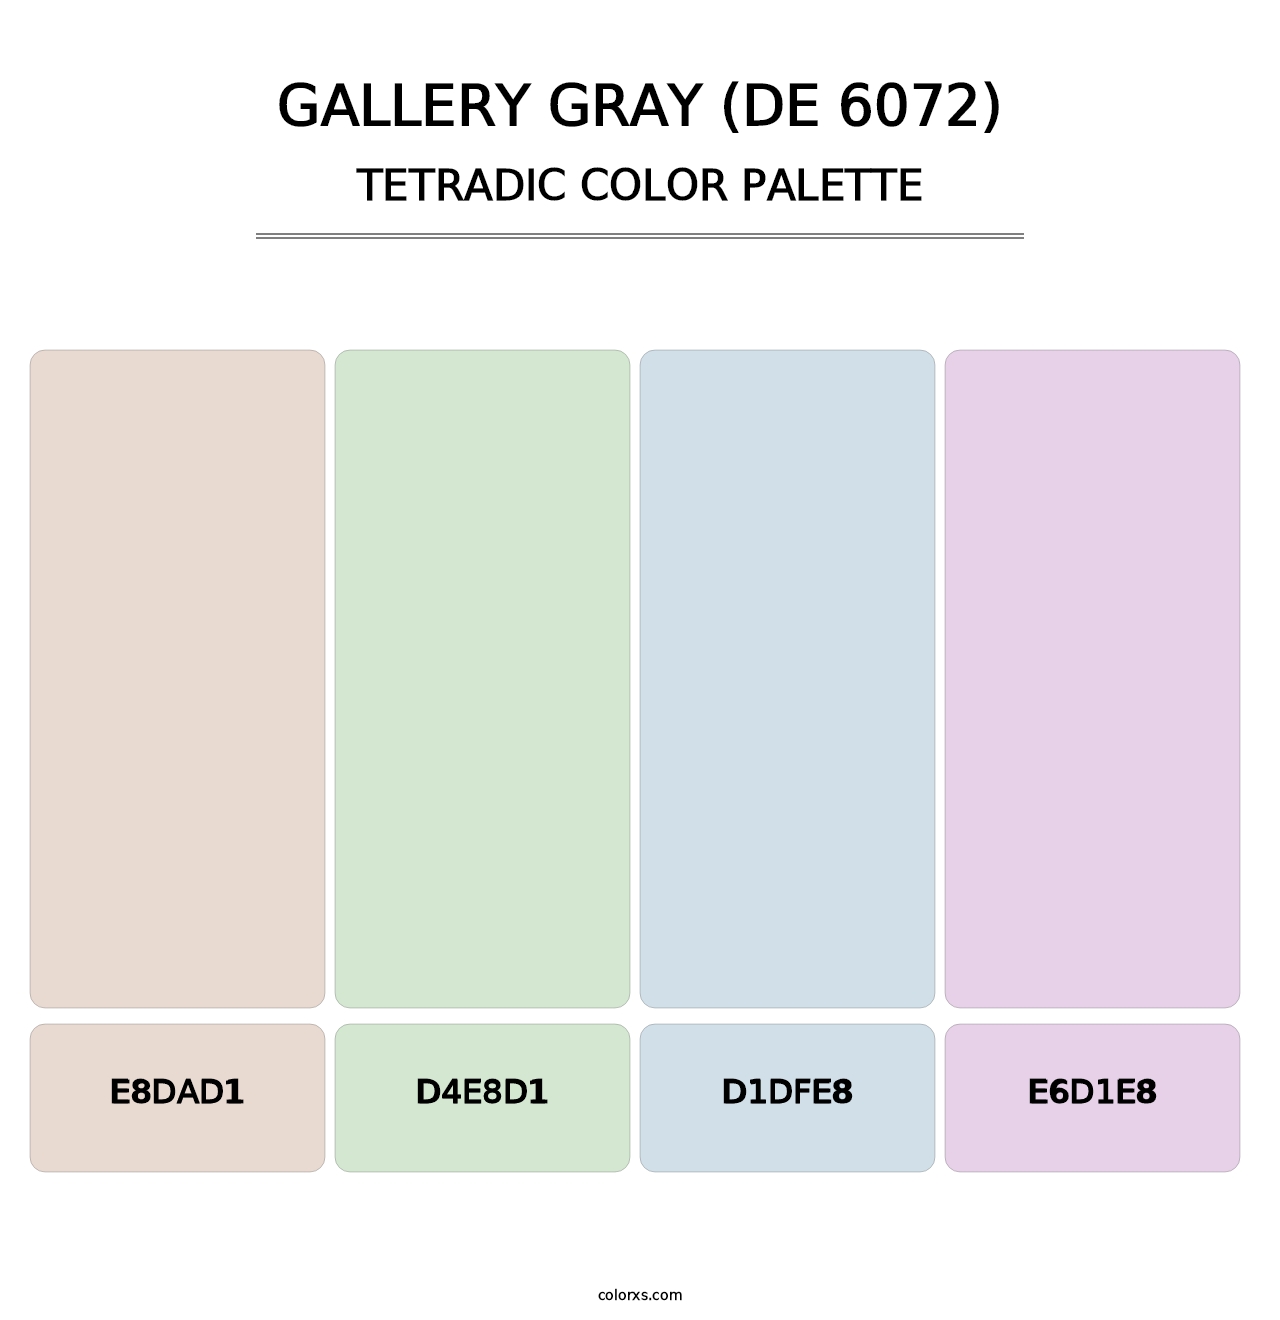 Gallery Gray (DE 6072) - Tetradic Color Palette